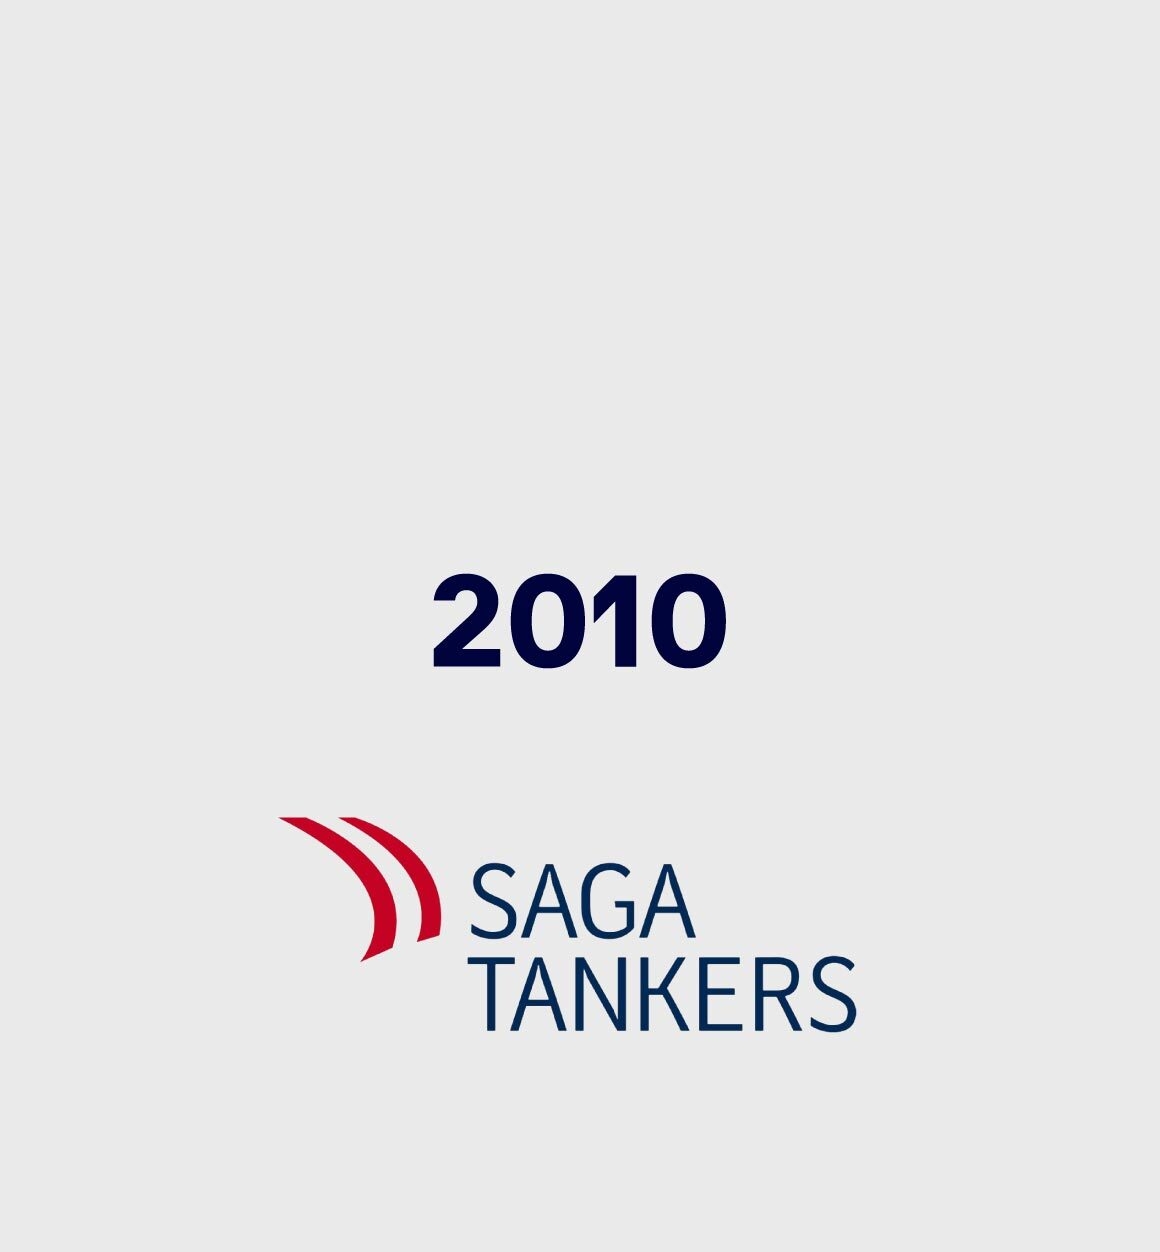 Saga Tankers 2010